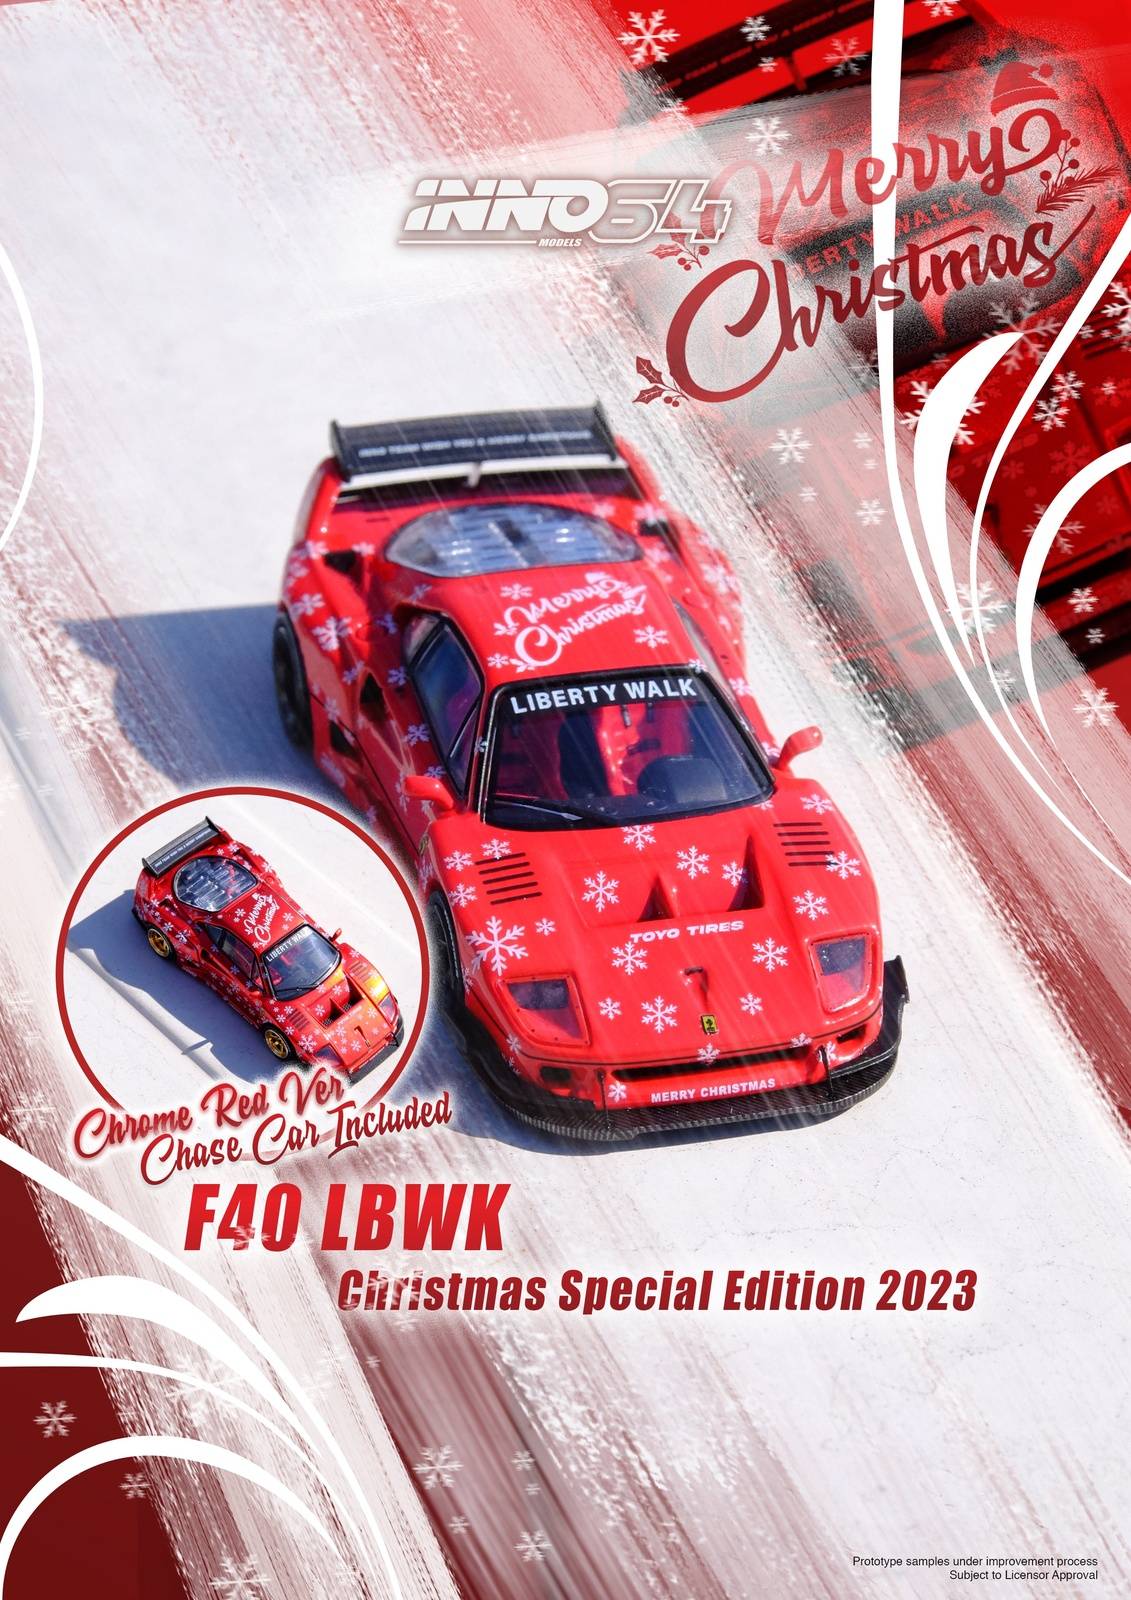 INNO64 1:64 LBWK Ferrari F40 Christmas Special Edition 2023